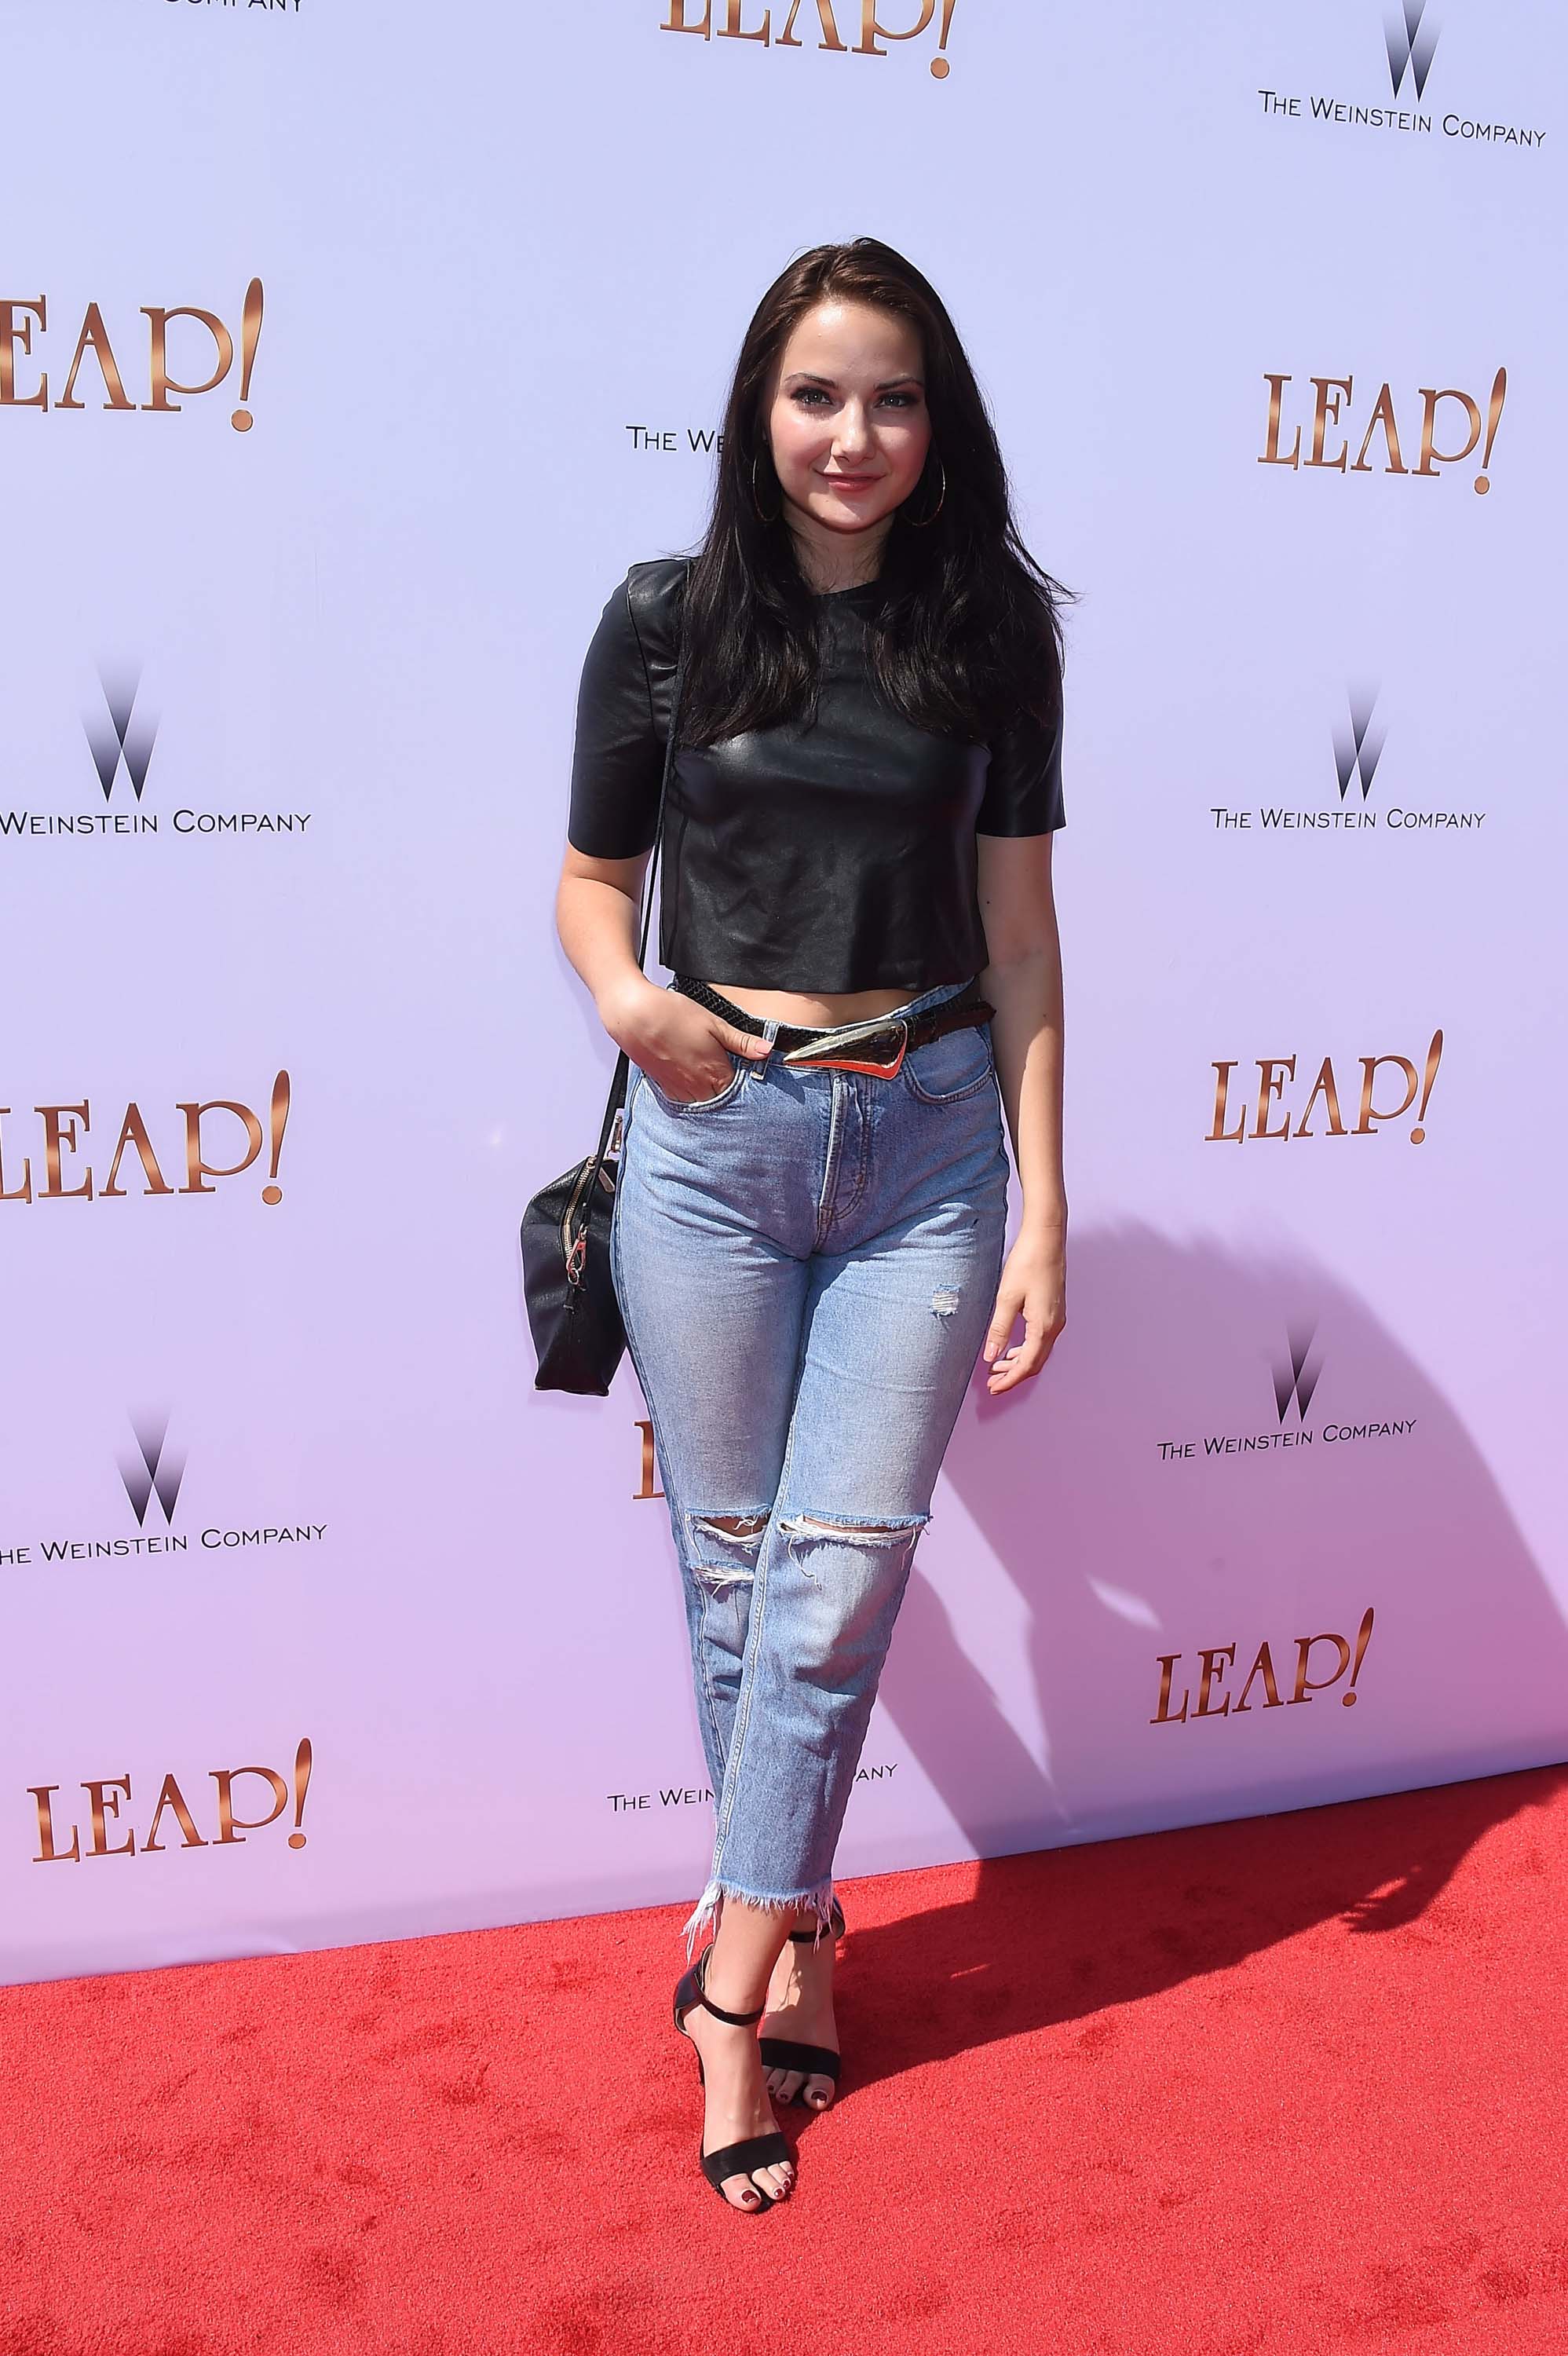 Rachel Raquel attends Leap film premiere